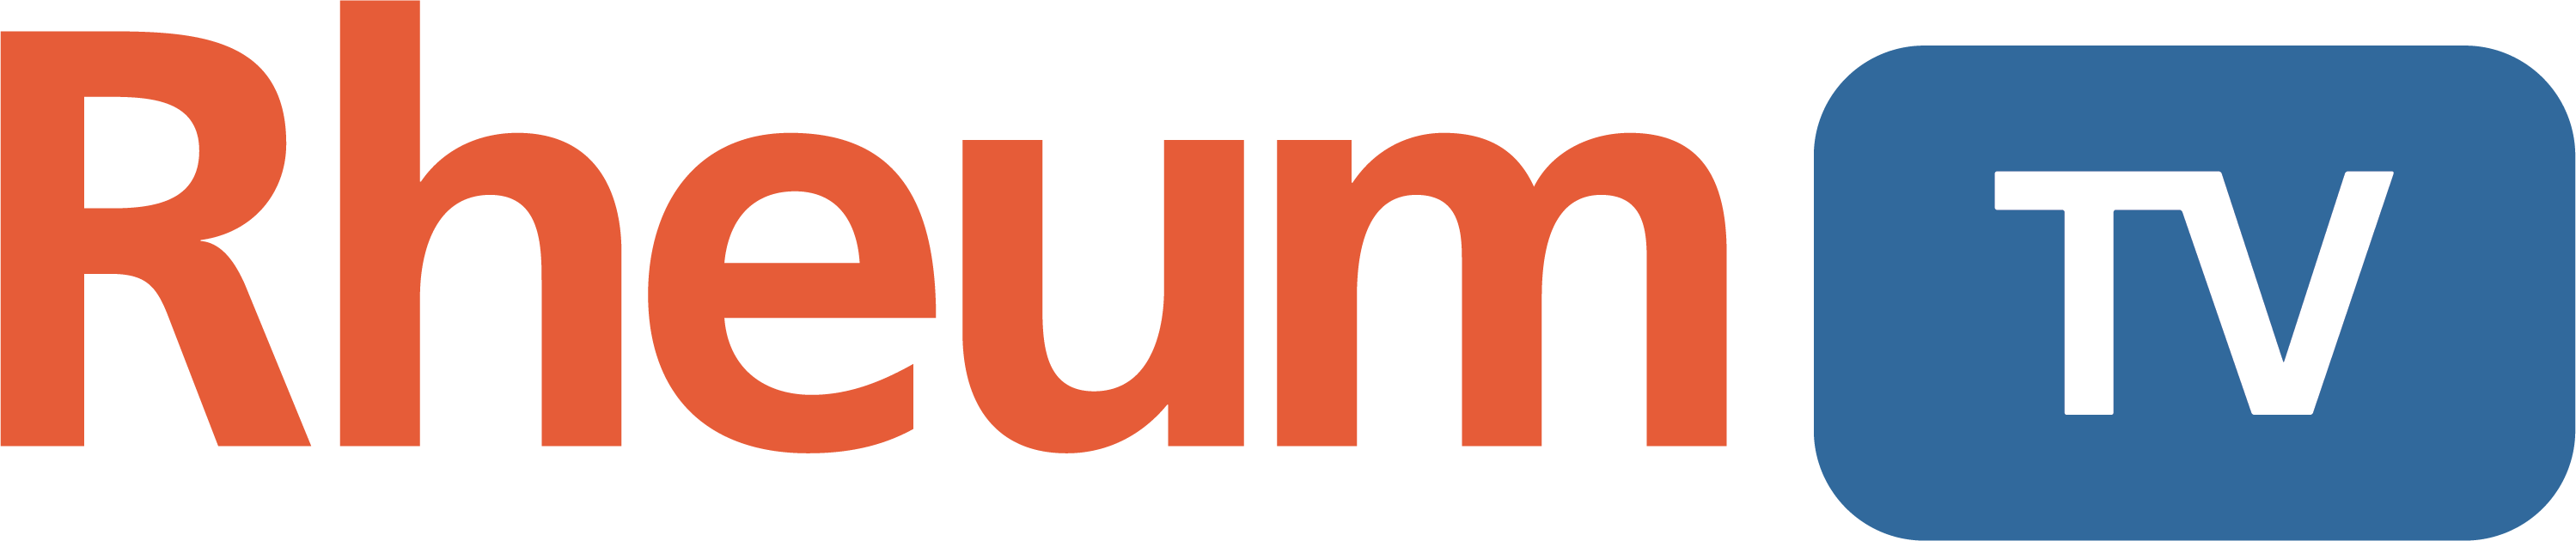 RheumTV Logo